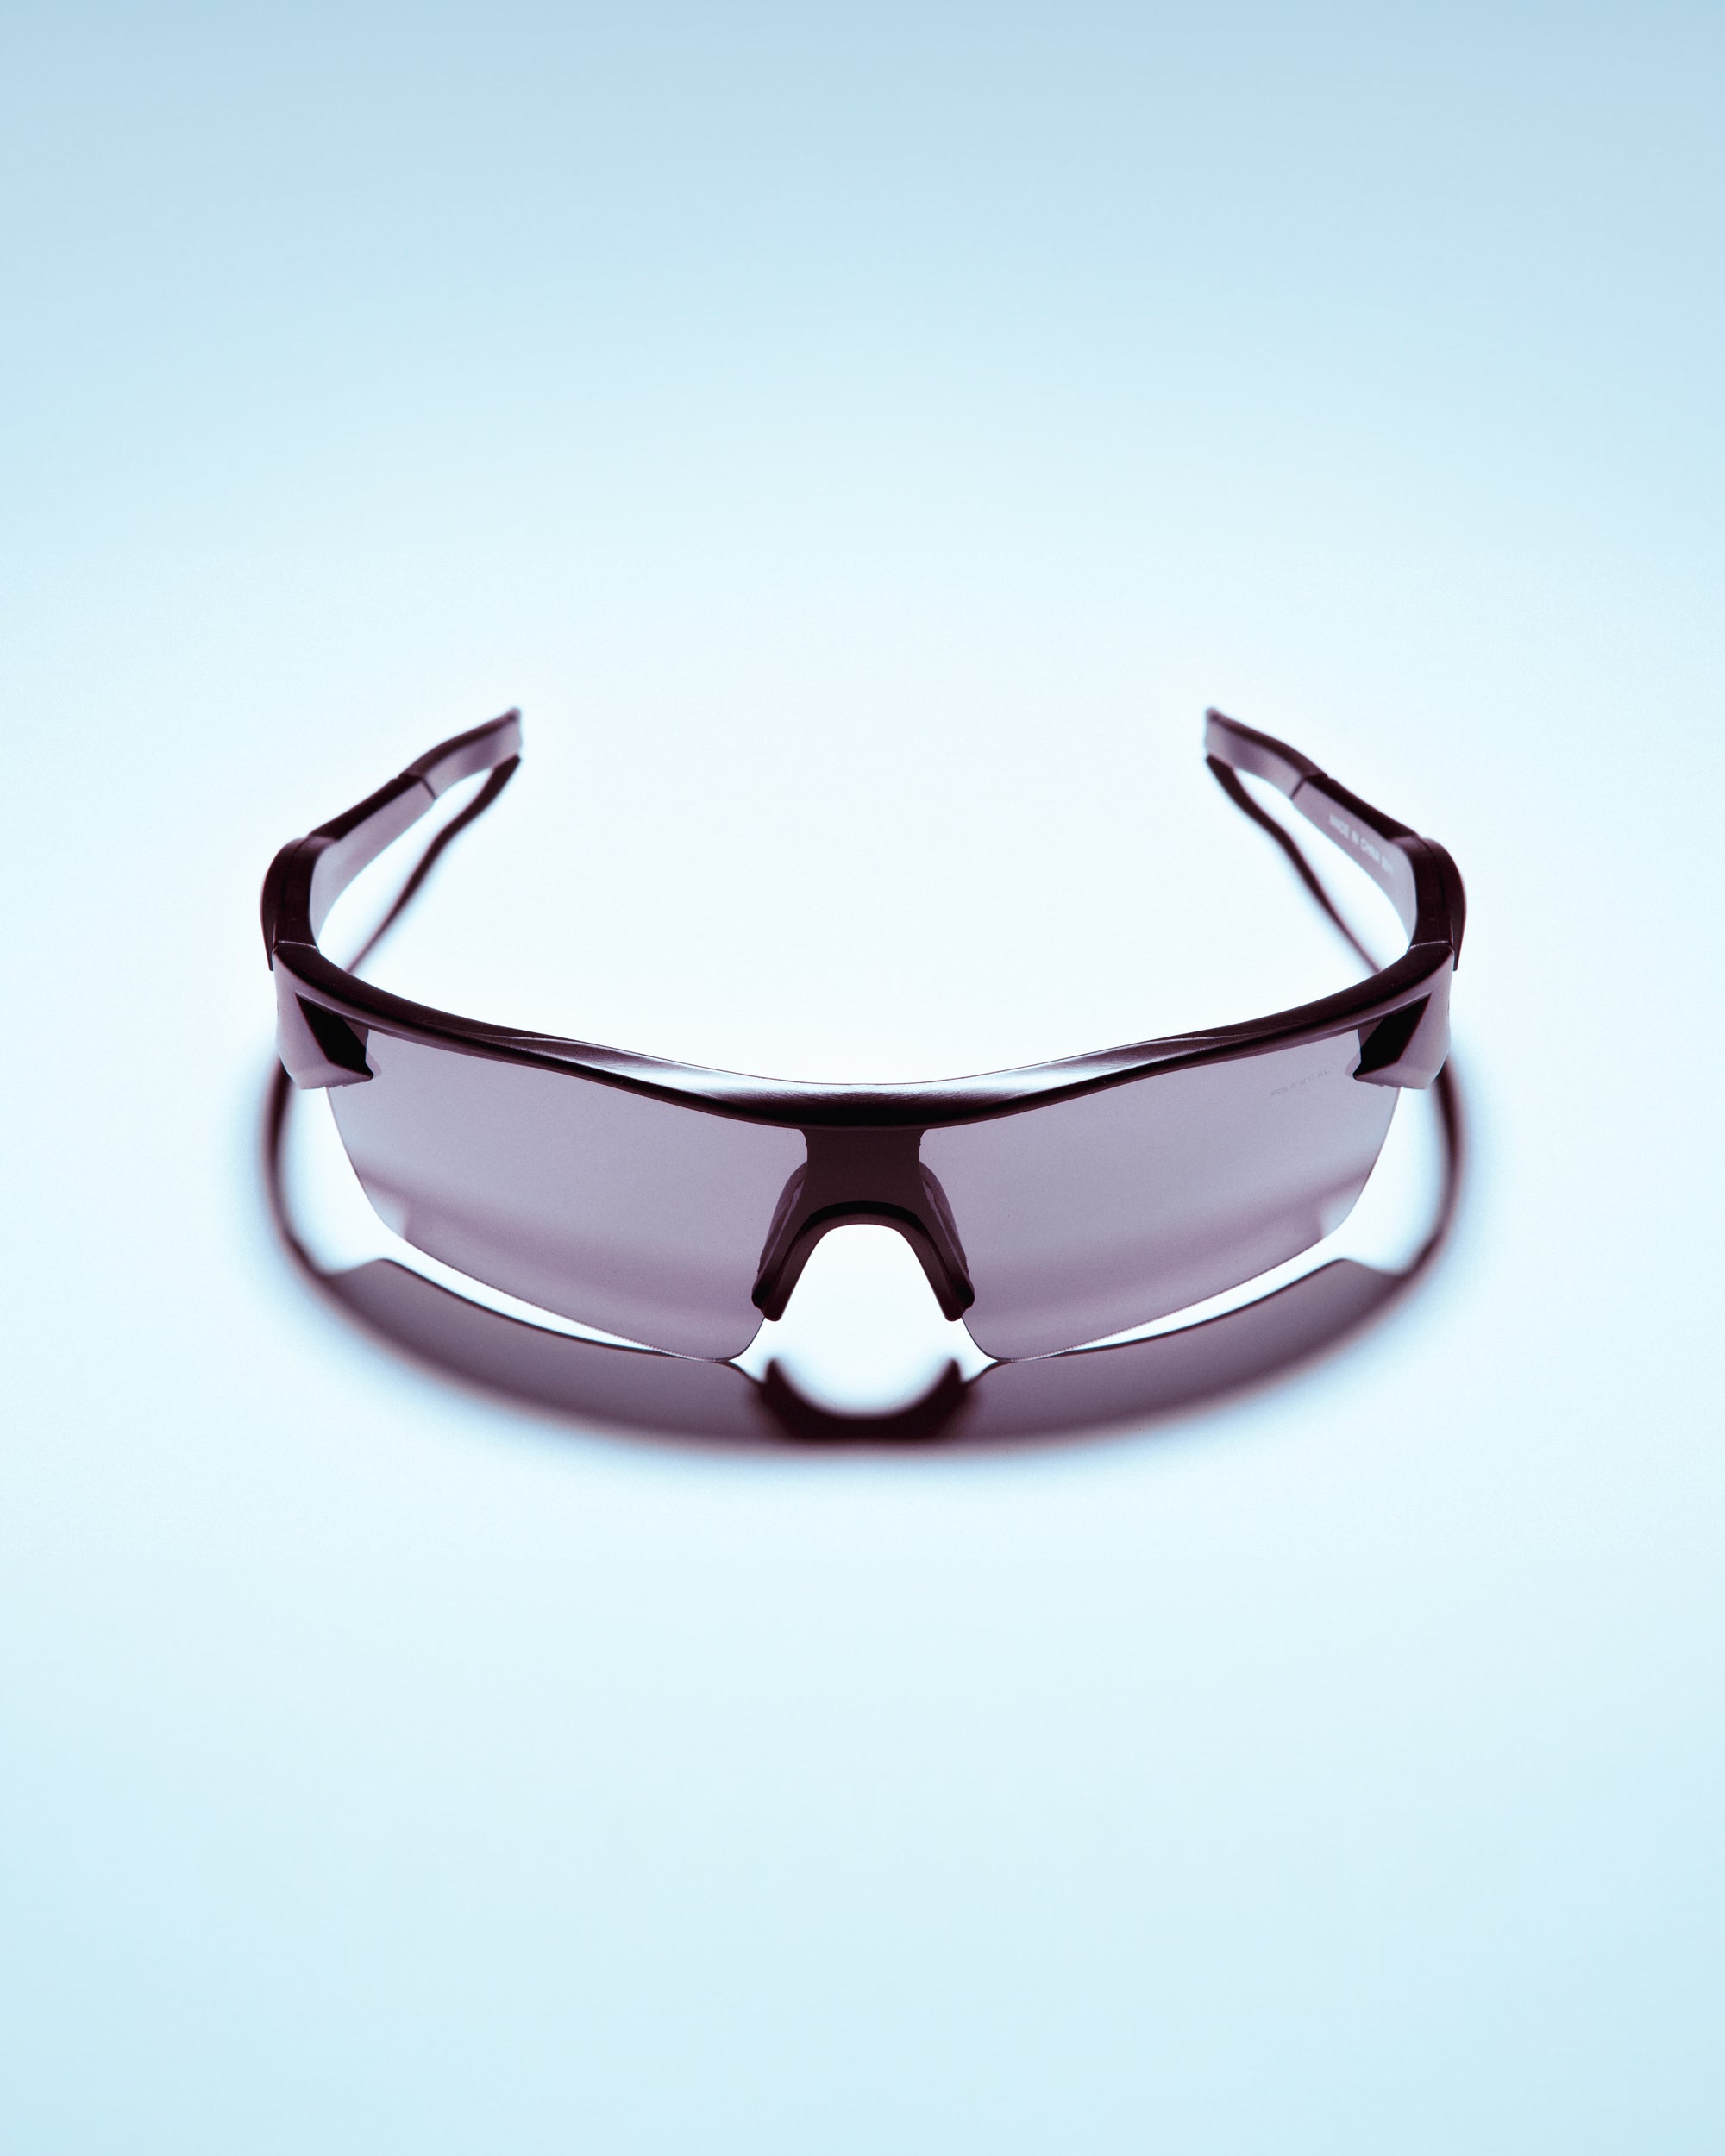 Sole et. Al RAWS Tech Racer Glasses : Black